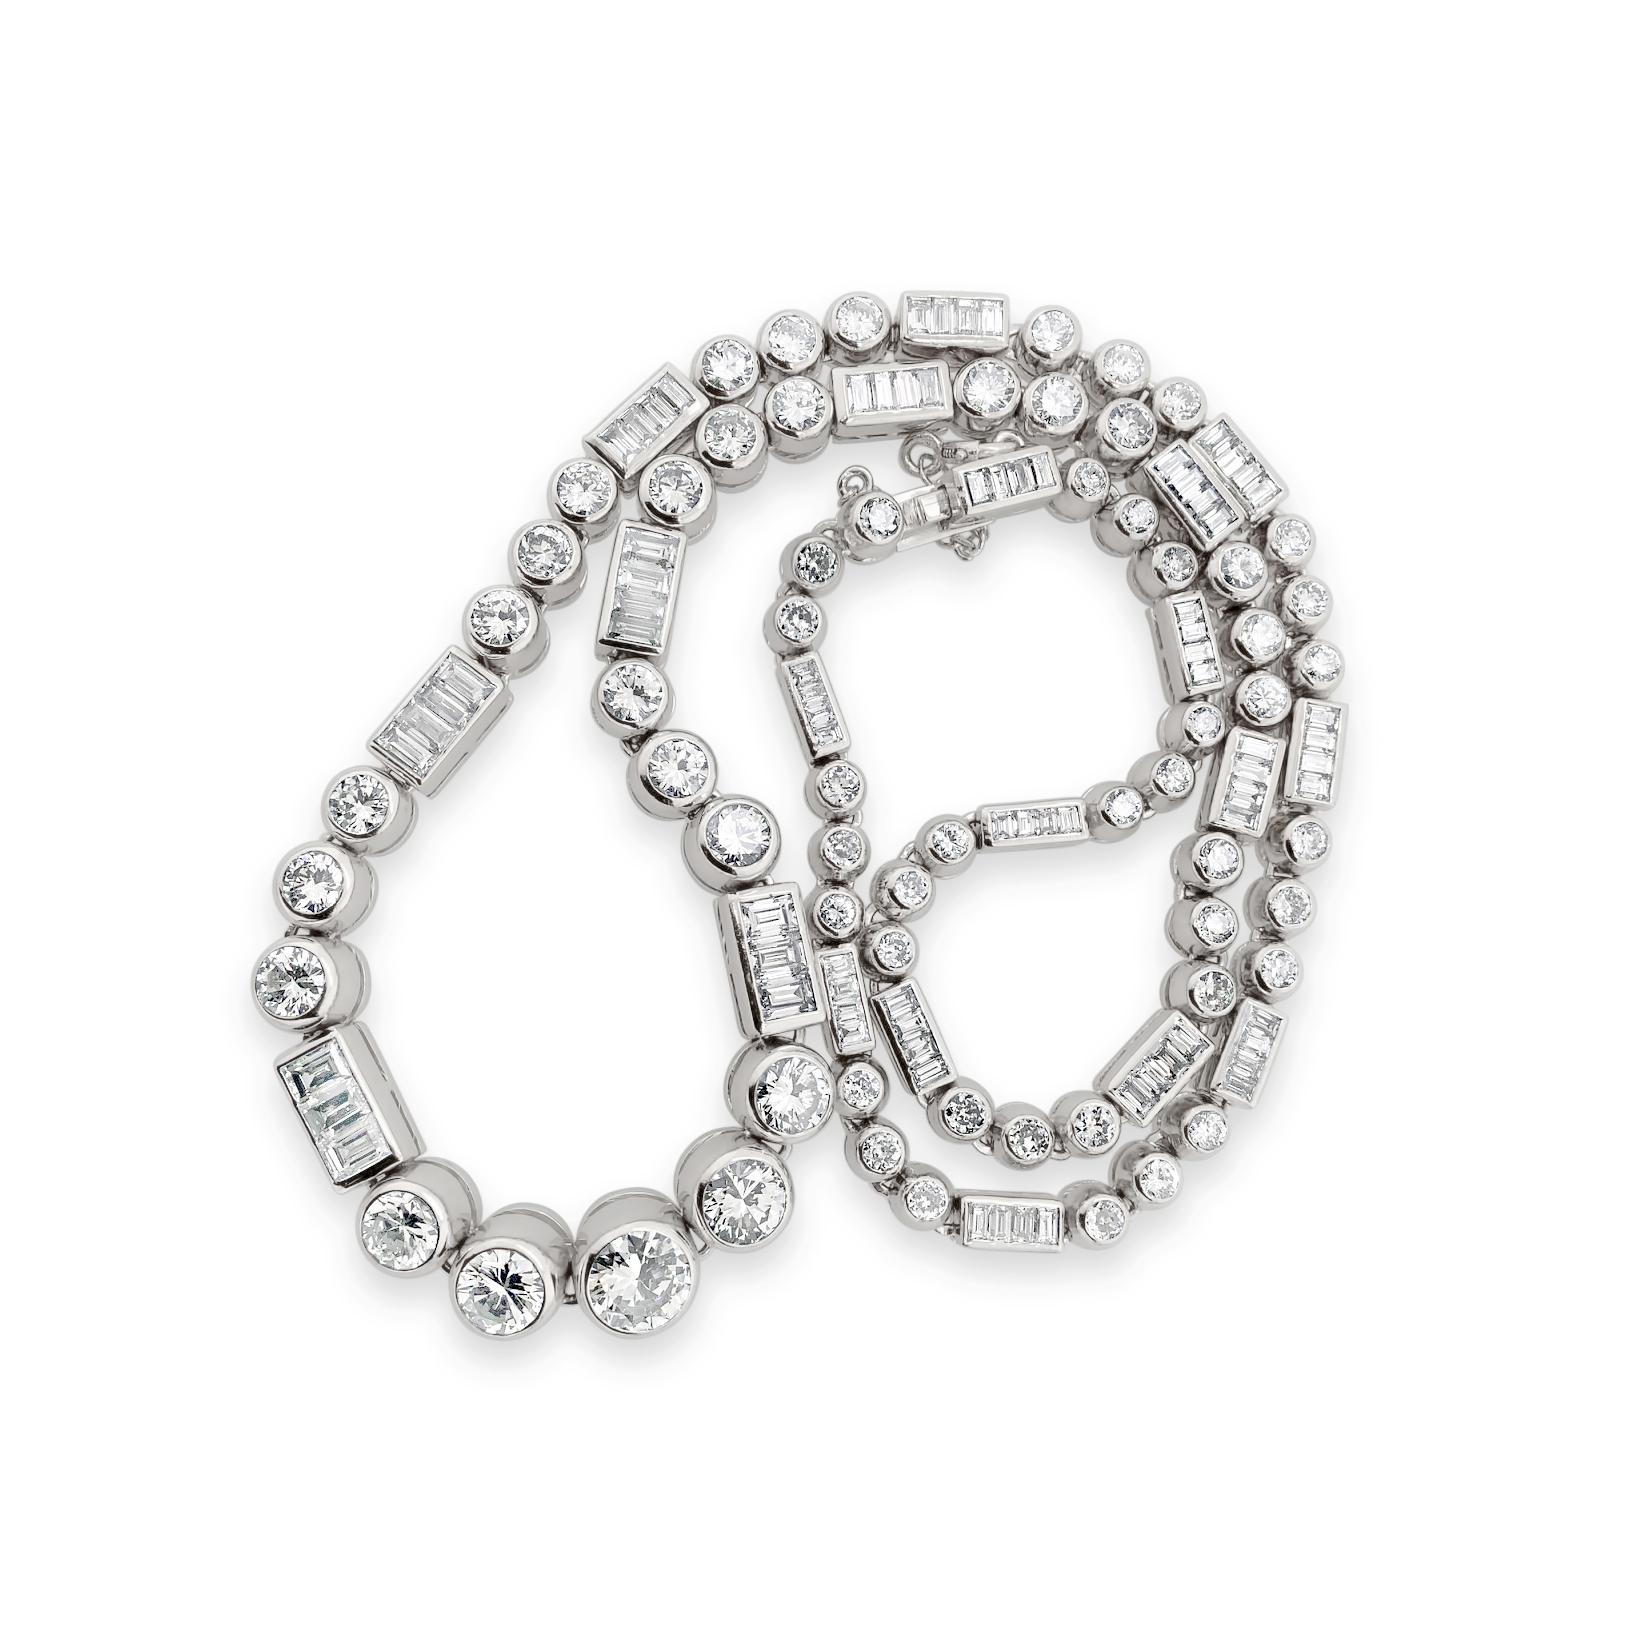 14.0 Karat (Gesamtgewicht) runde und Baguette-Diamanten Halskette in Platin, mit einem Platin Barrel Verschluss und Sicherheitskette. Die Länge beträgt 16